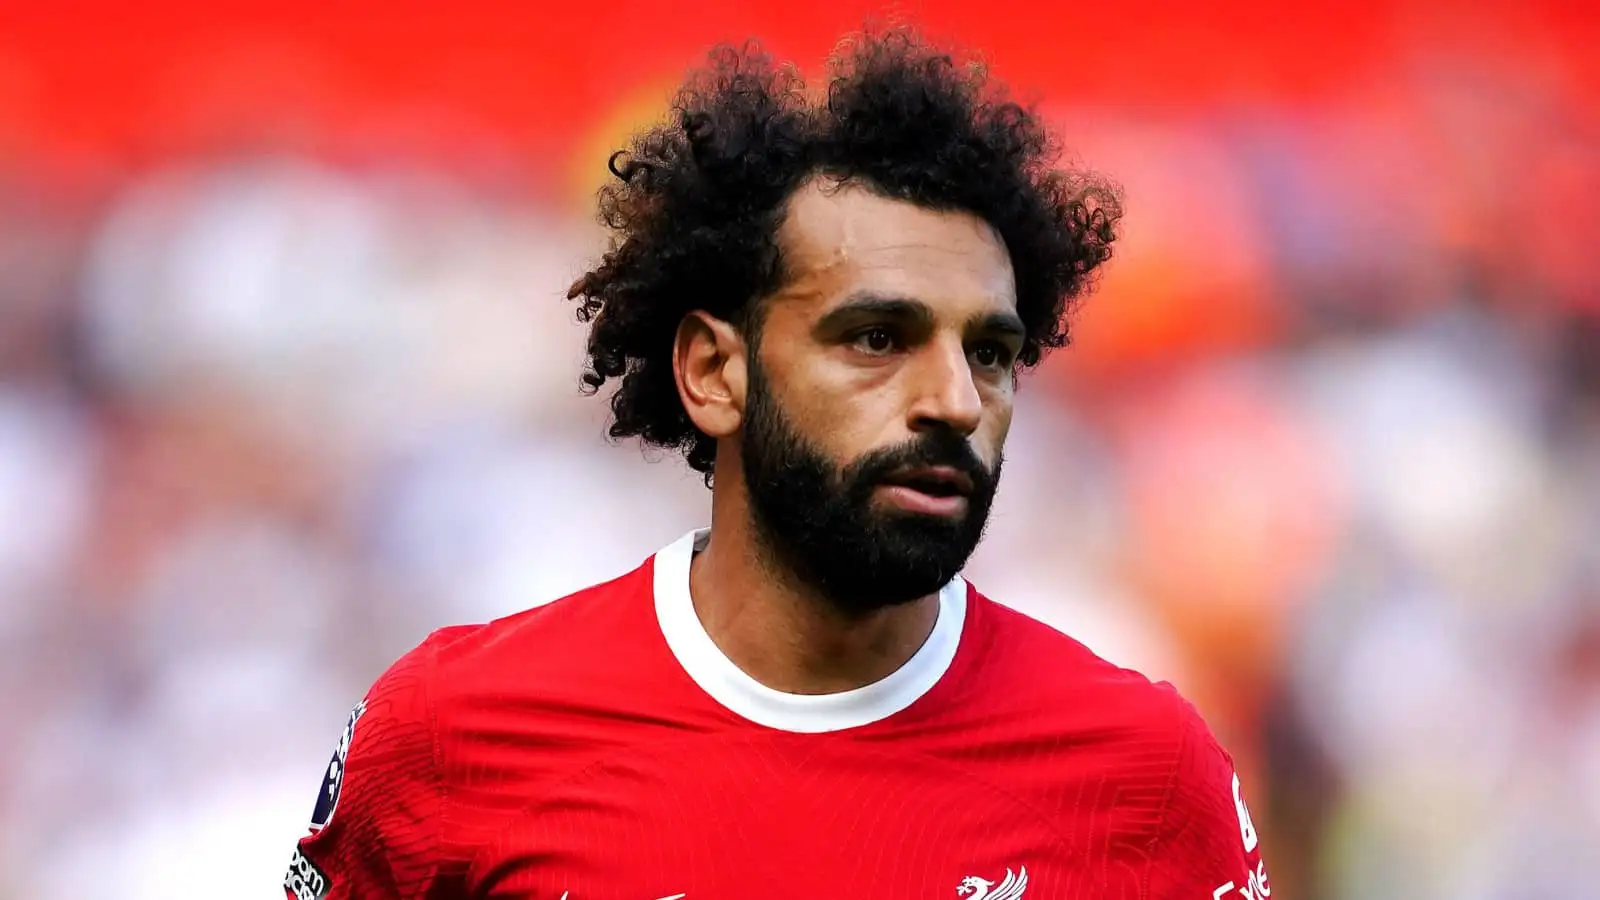 Liverpool winger Mohamed Salah